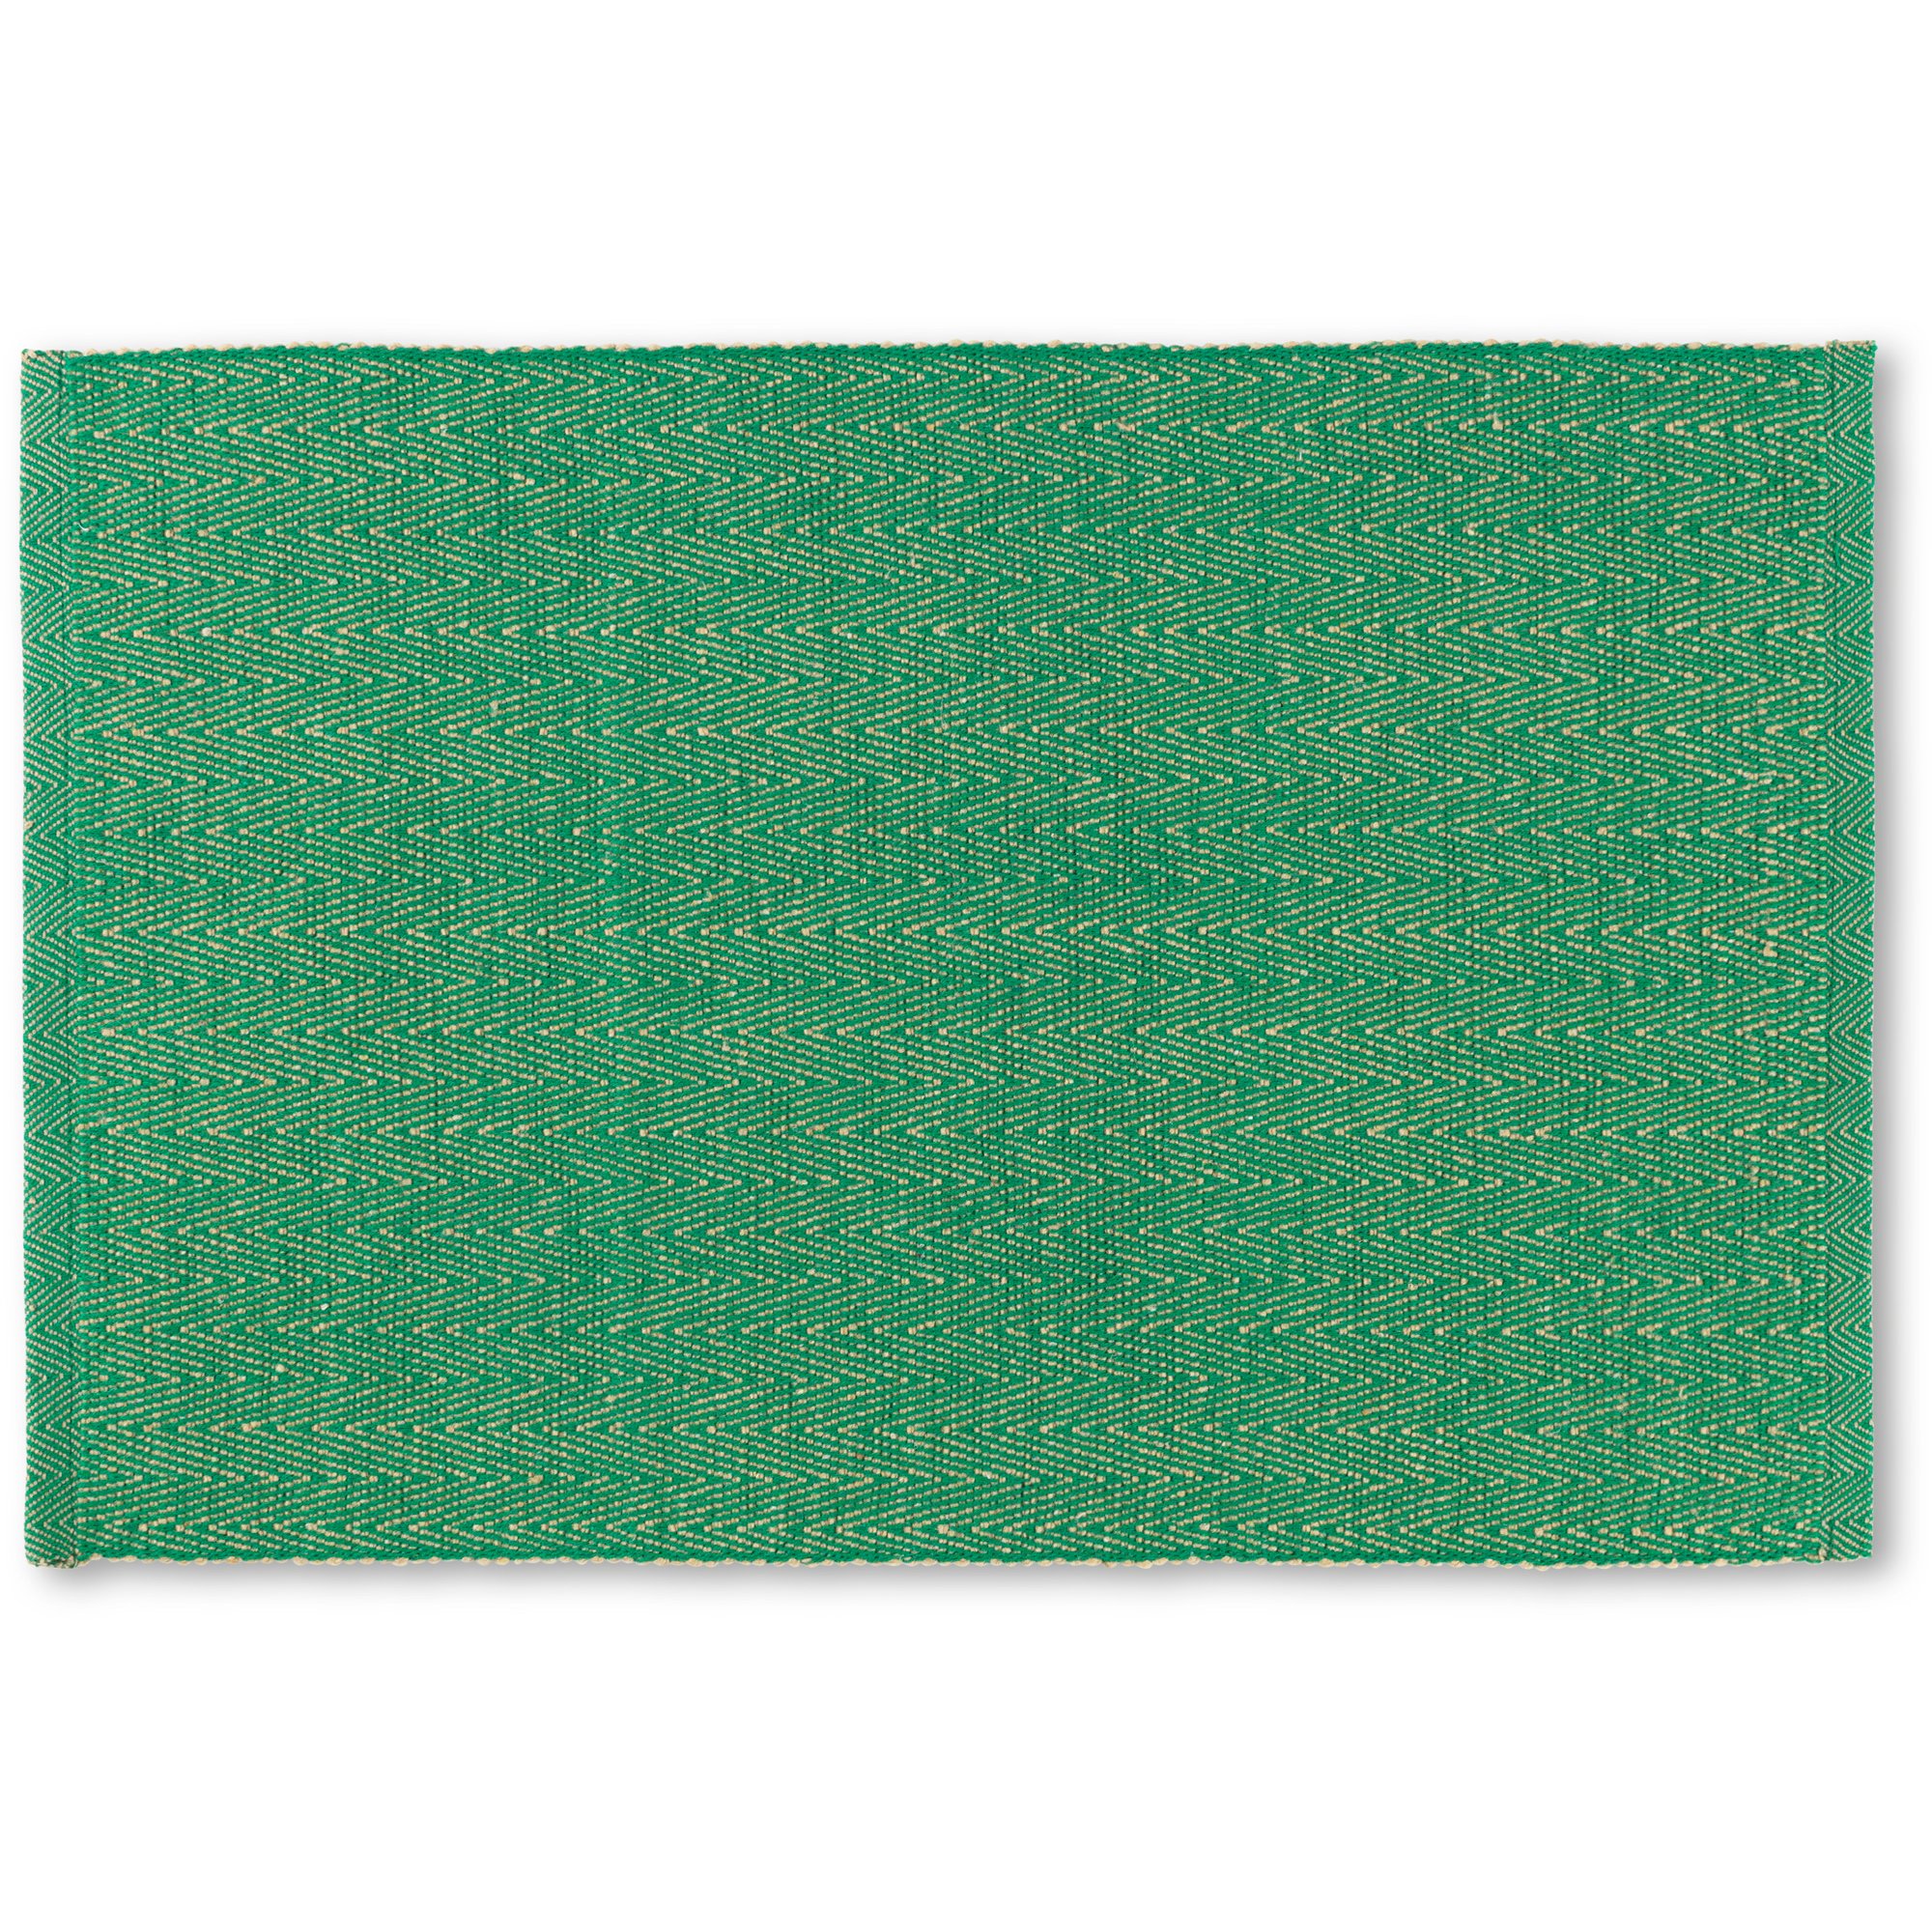 Produktfoto för Lyngby Porcelæn Herringbone bordstablett, grön